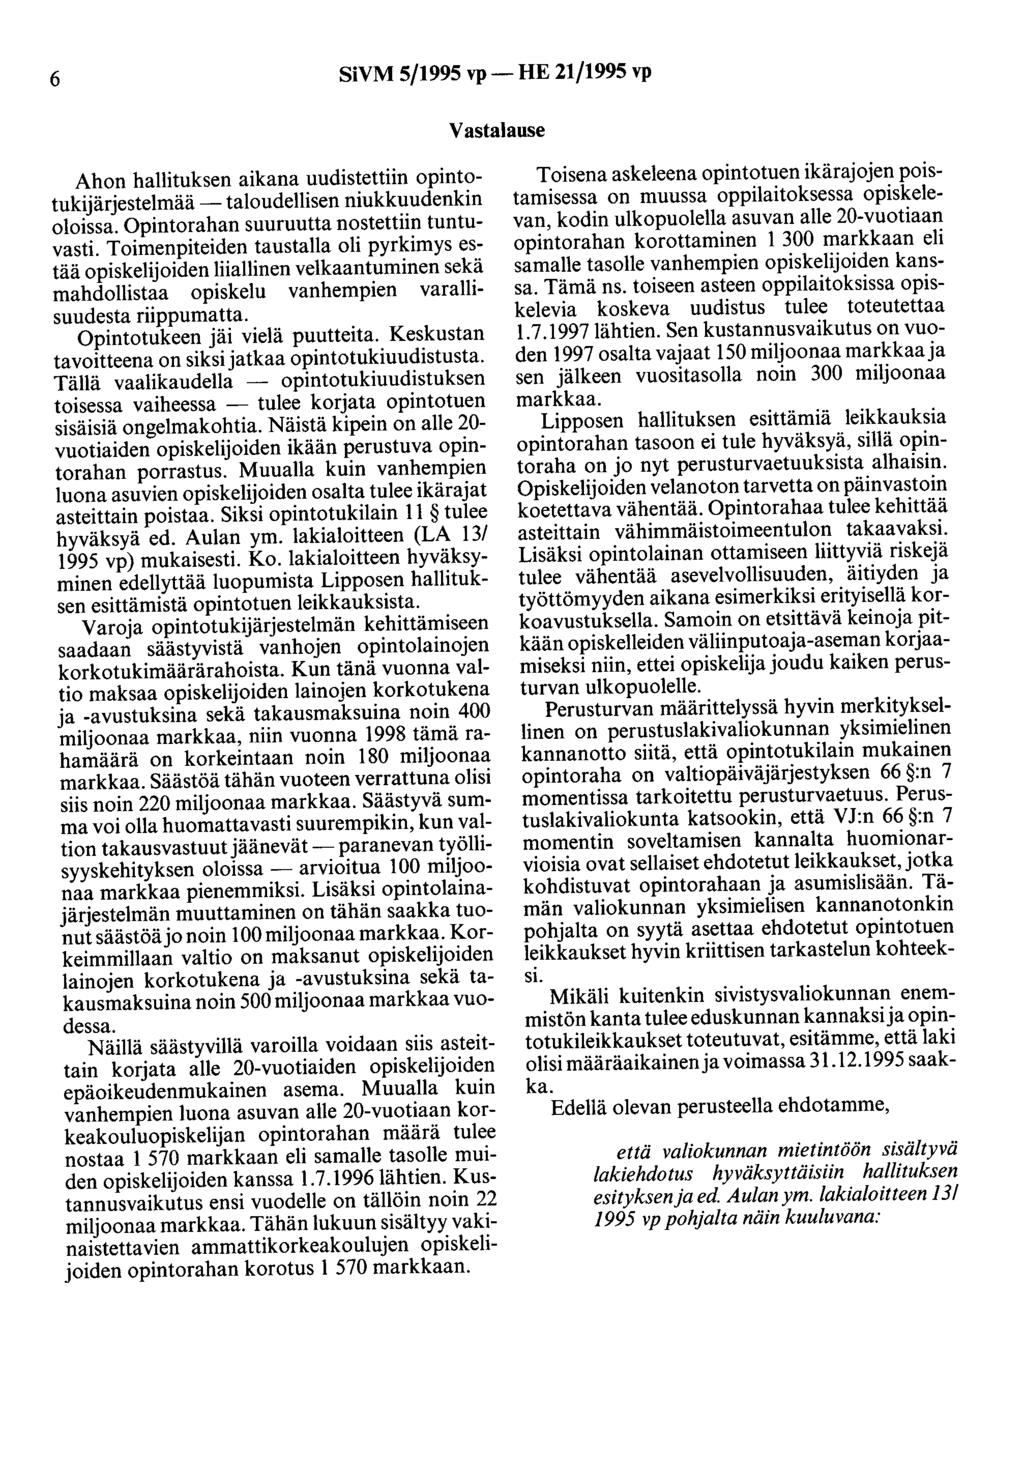 6 SiVM 5/1995 vp- HE 21/1995 vp Vastalause Ahon hallituksen aikana uudistettiin opintotukijärjestelmää -taloudellisen niukkuudenkin oloissa. Opintorahan suuruutta nostettiin tuntuvasti.